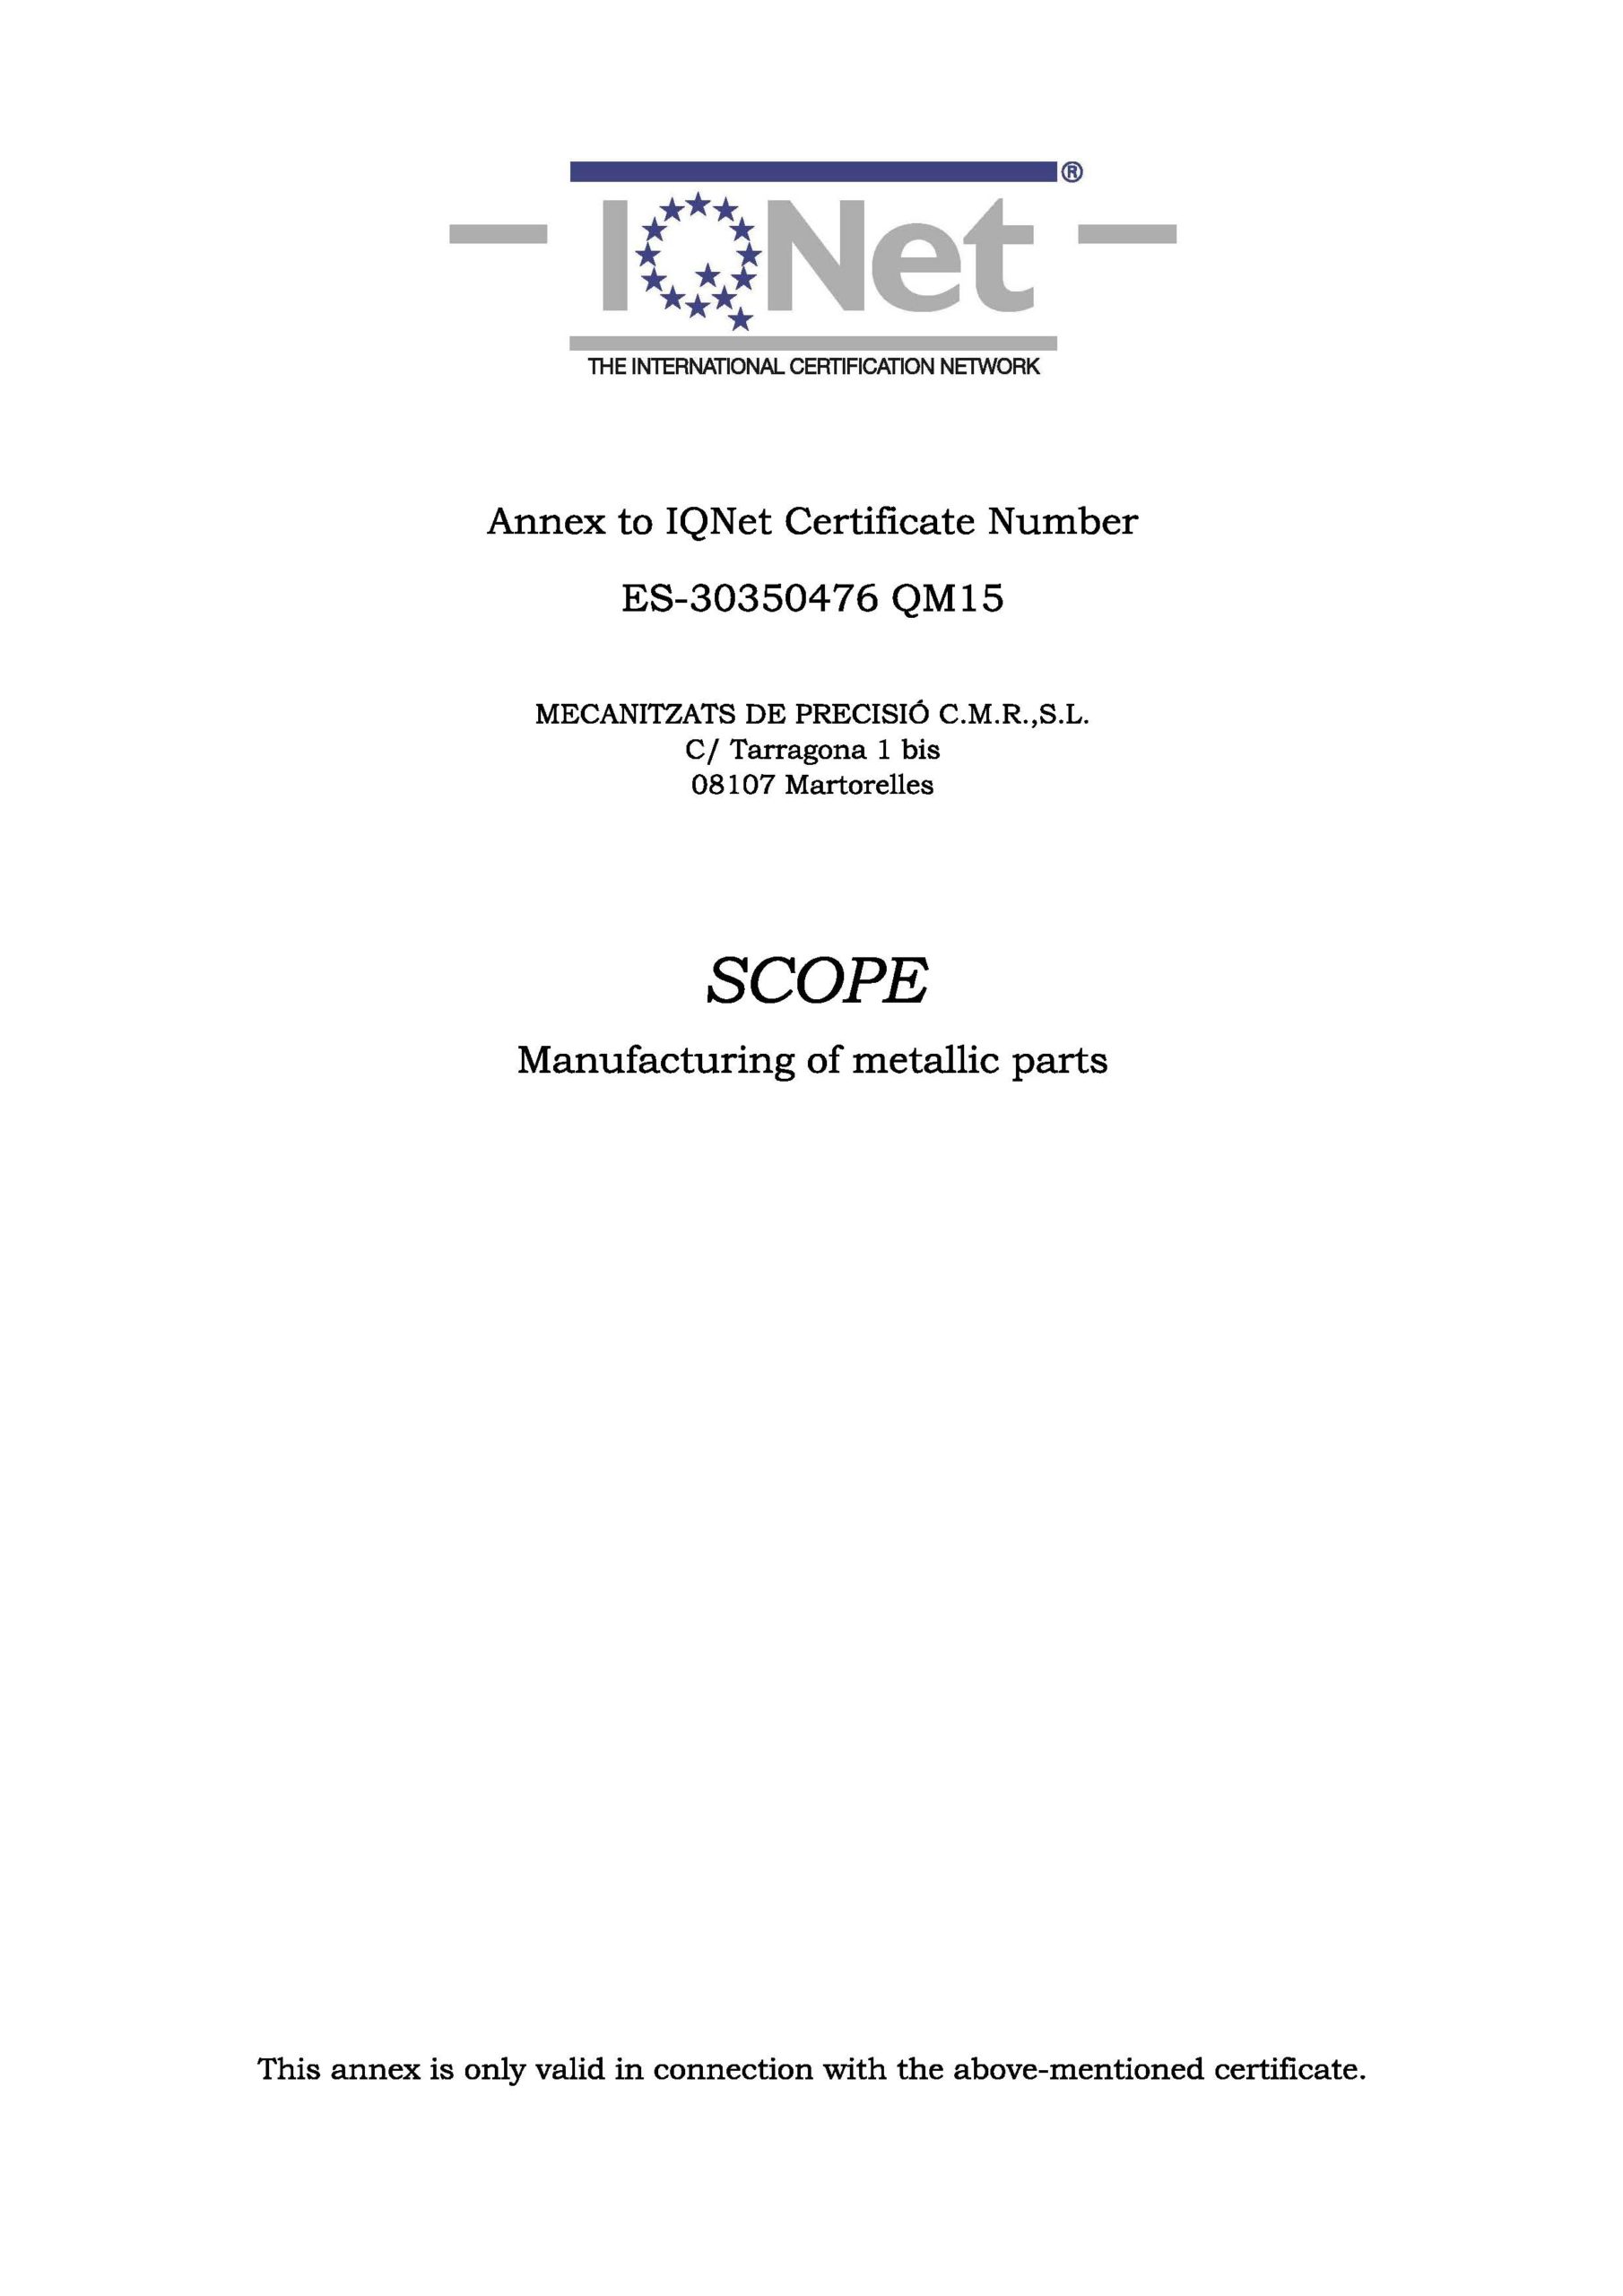 Certificado IQNET CMR 2 | Mecanizados C.M.R